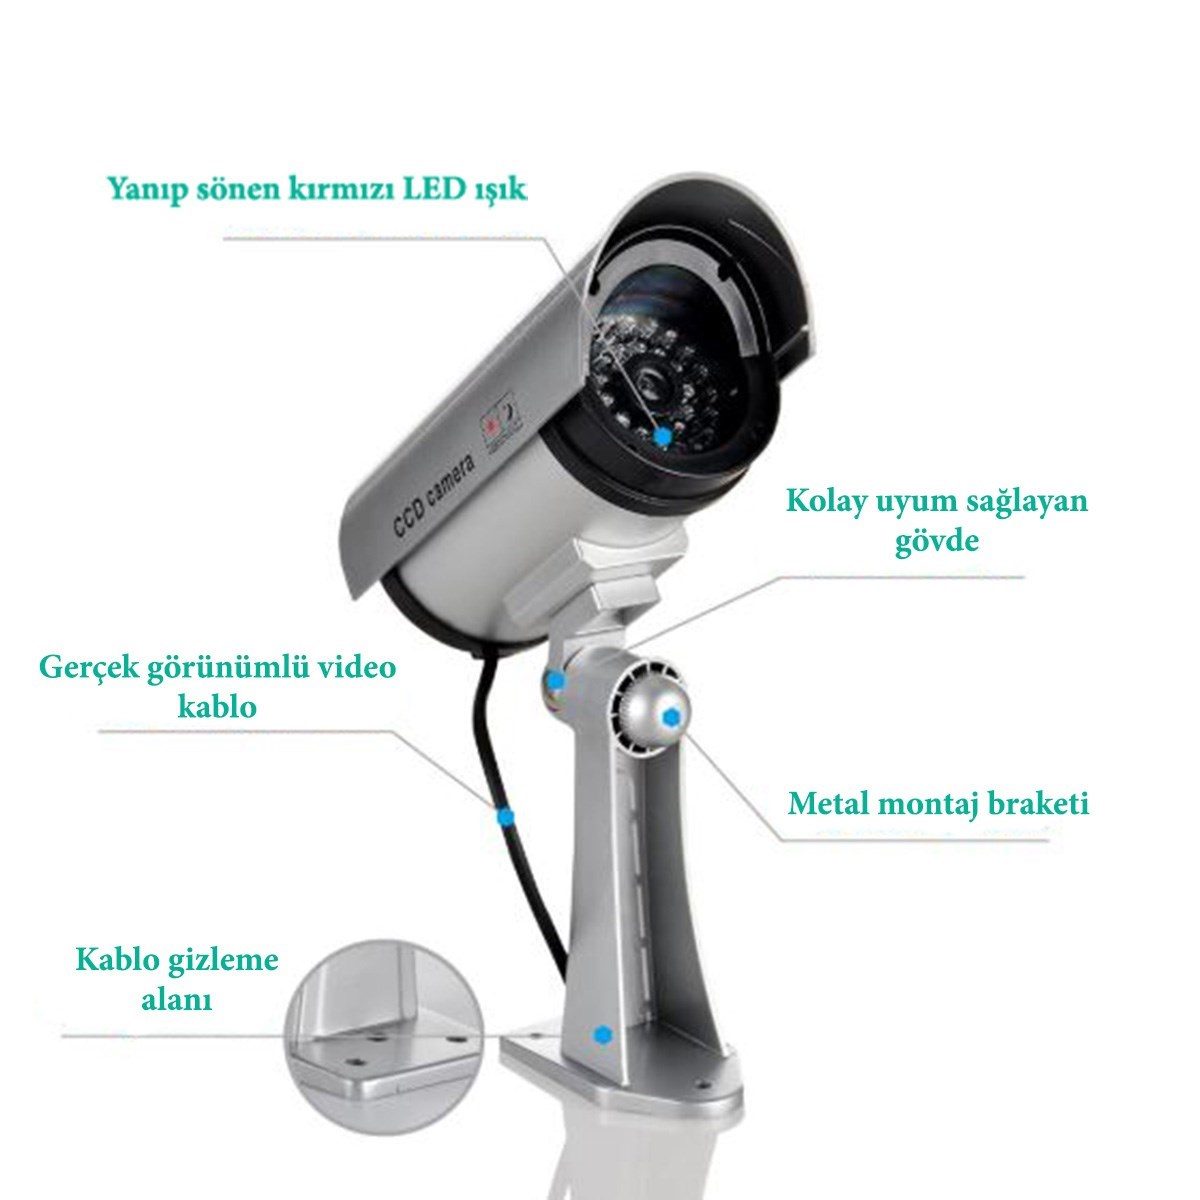 CLZ192 %100 Gerçekçi İç ve Dış Mekan İçin Sahte Güvenlik Kamerası (4172)